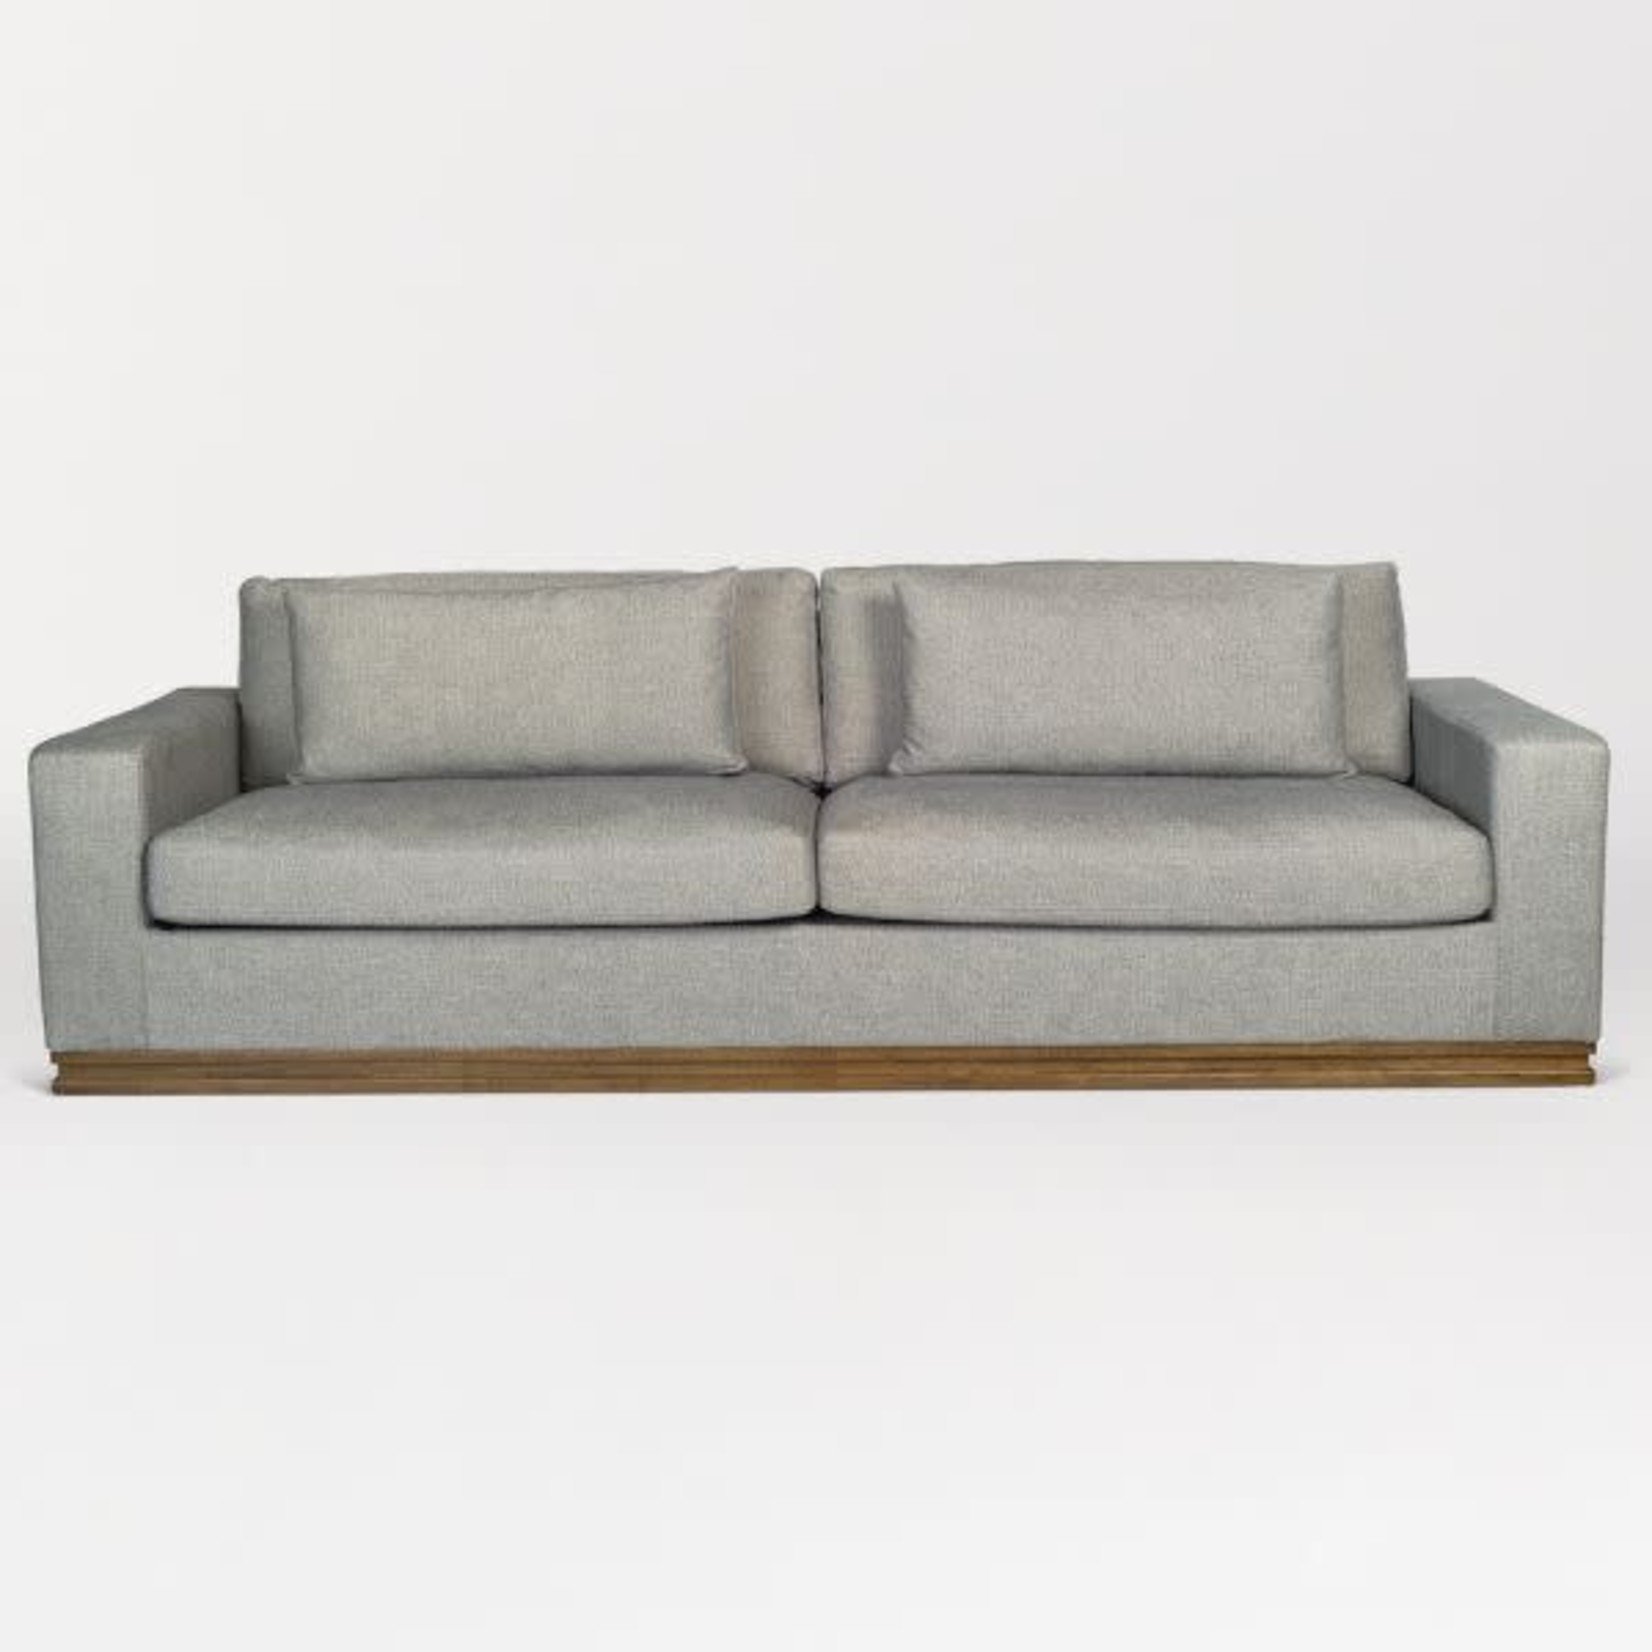 Mickler & Co. Pate Grey Sofa